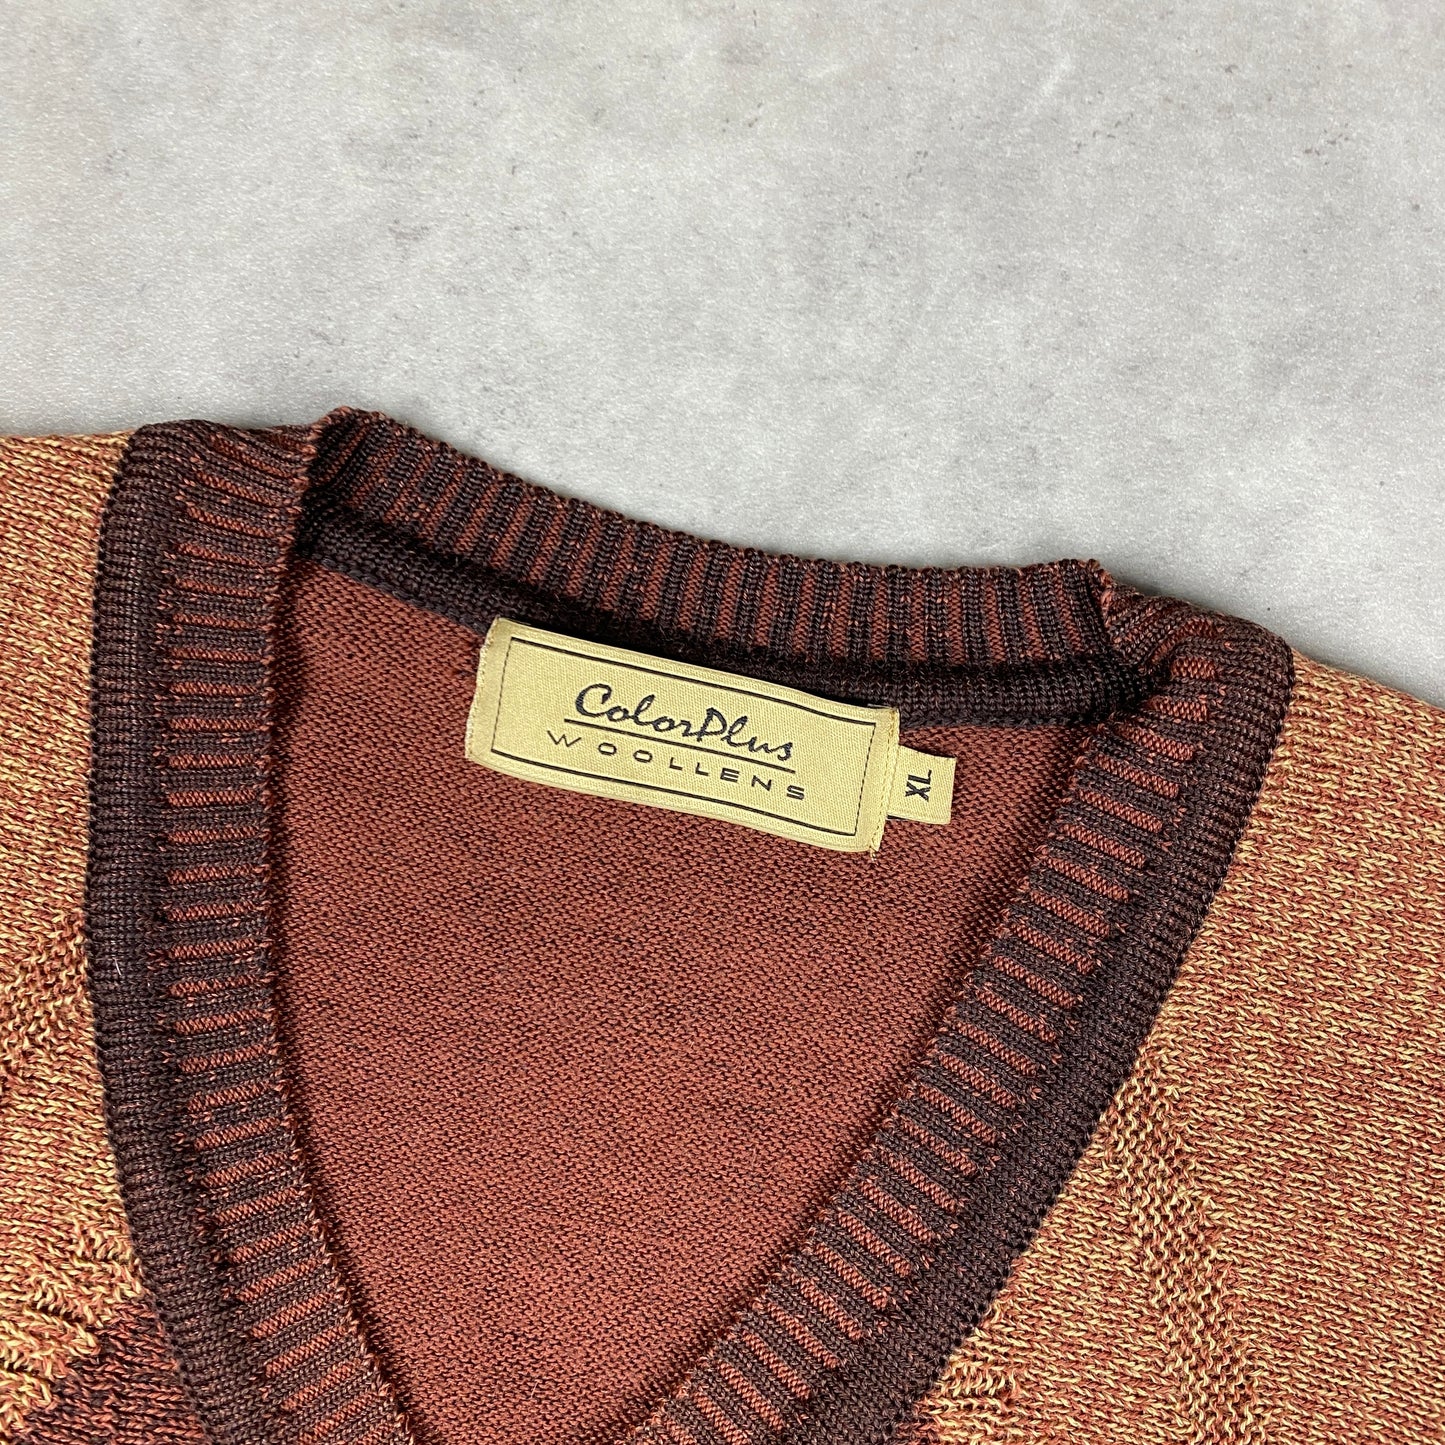 VTG heavyweight knit sweater (XL)